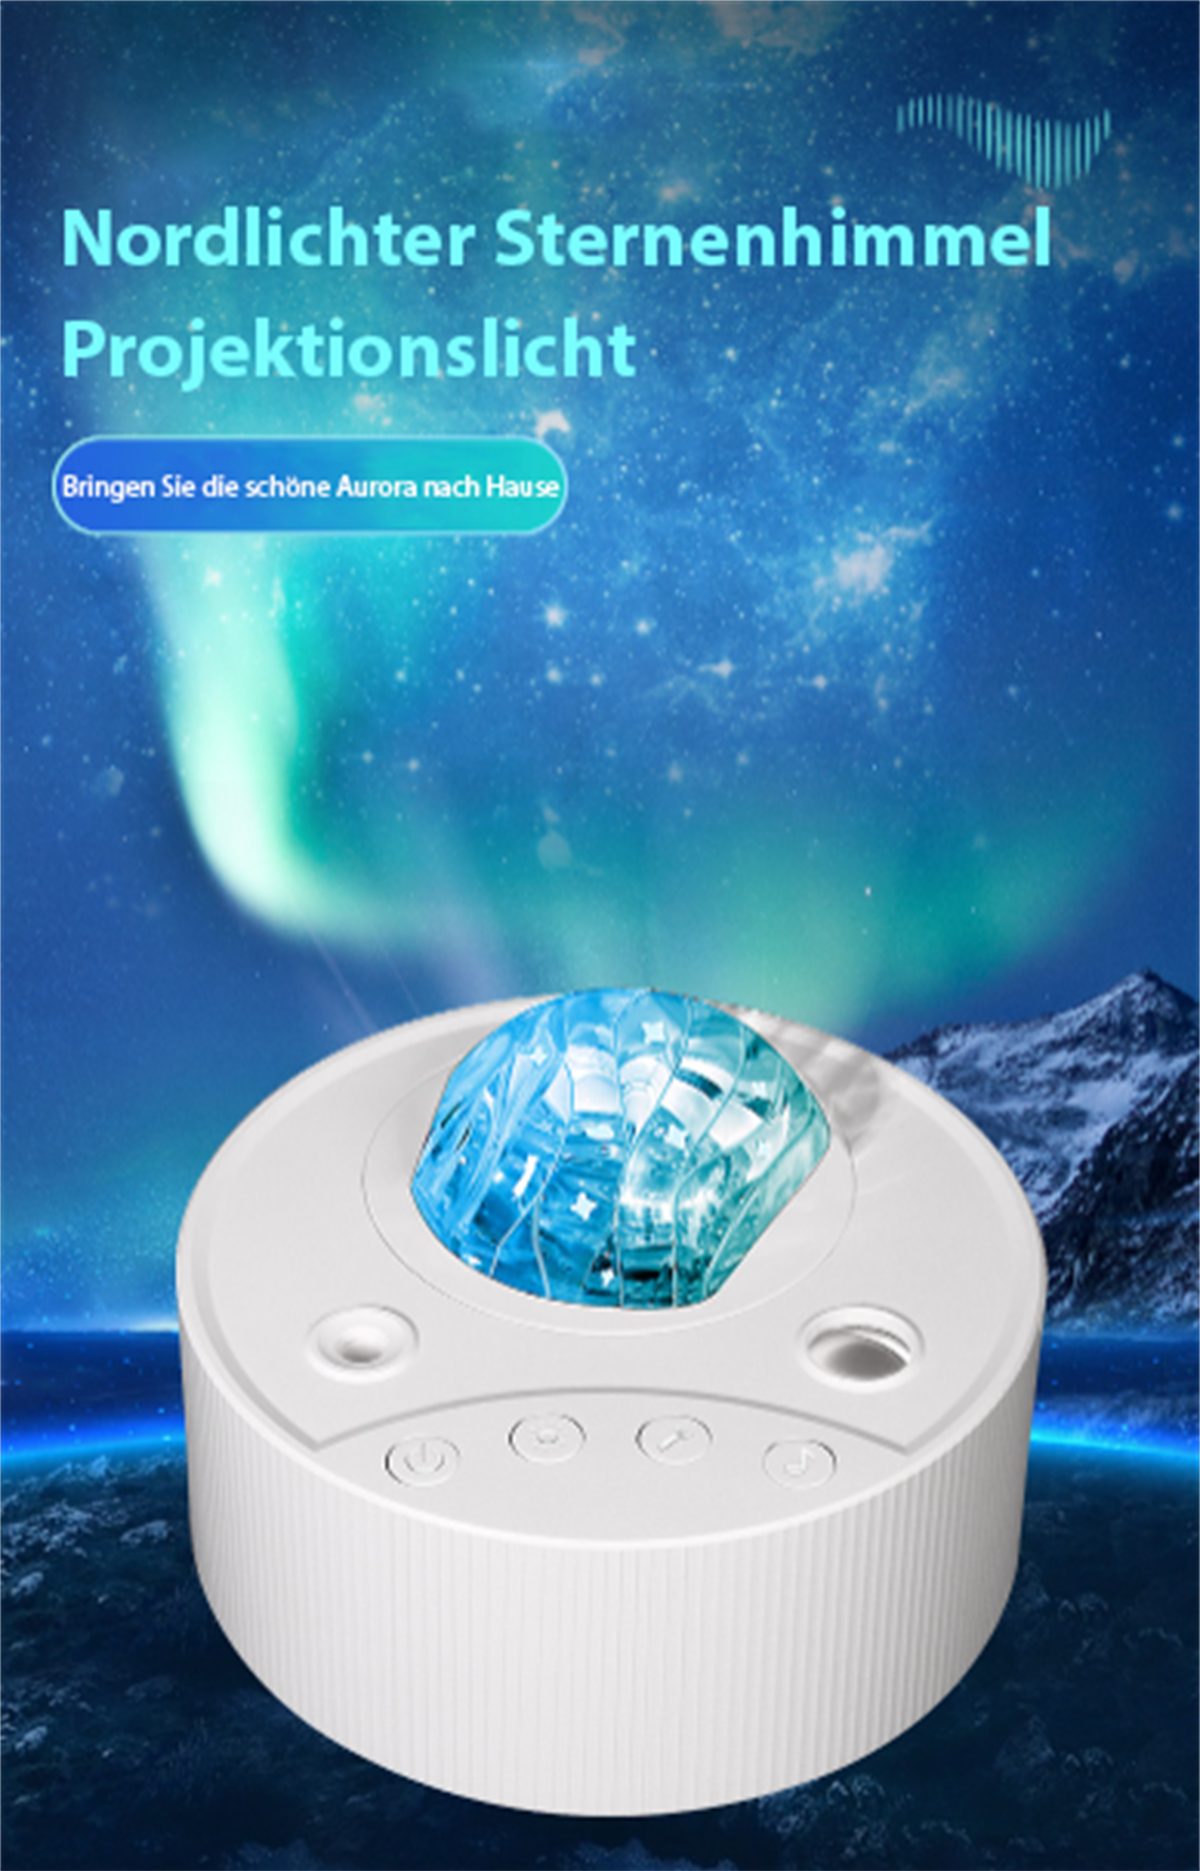 carefully LED-Sternenhimmellicht, Musik-Nachtlicht-Geschenkbox Nachtlicht rotierende Weiß selected LED bunte